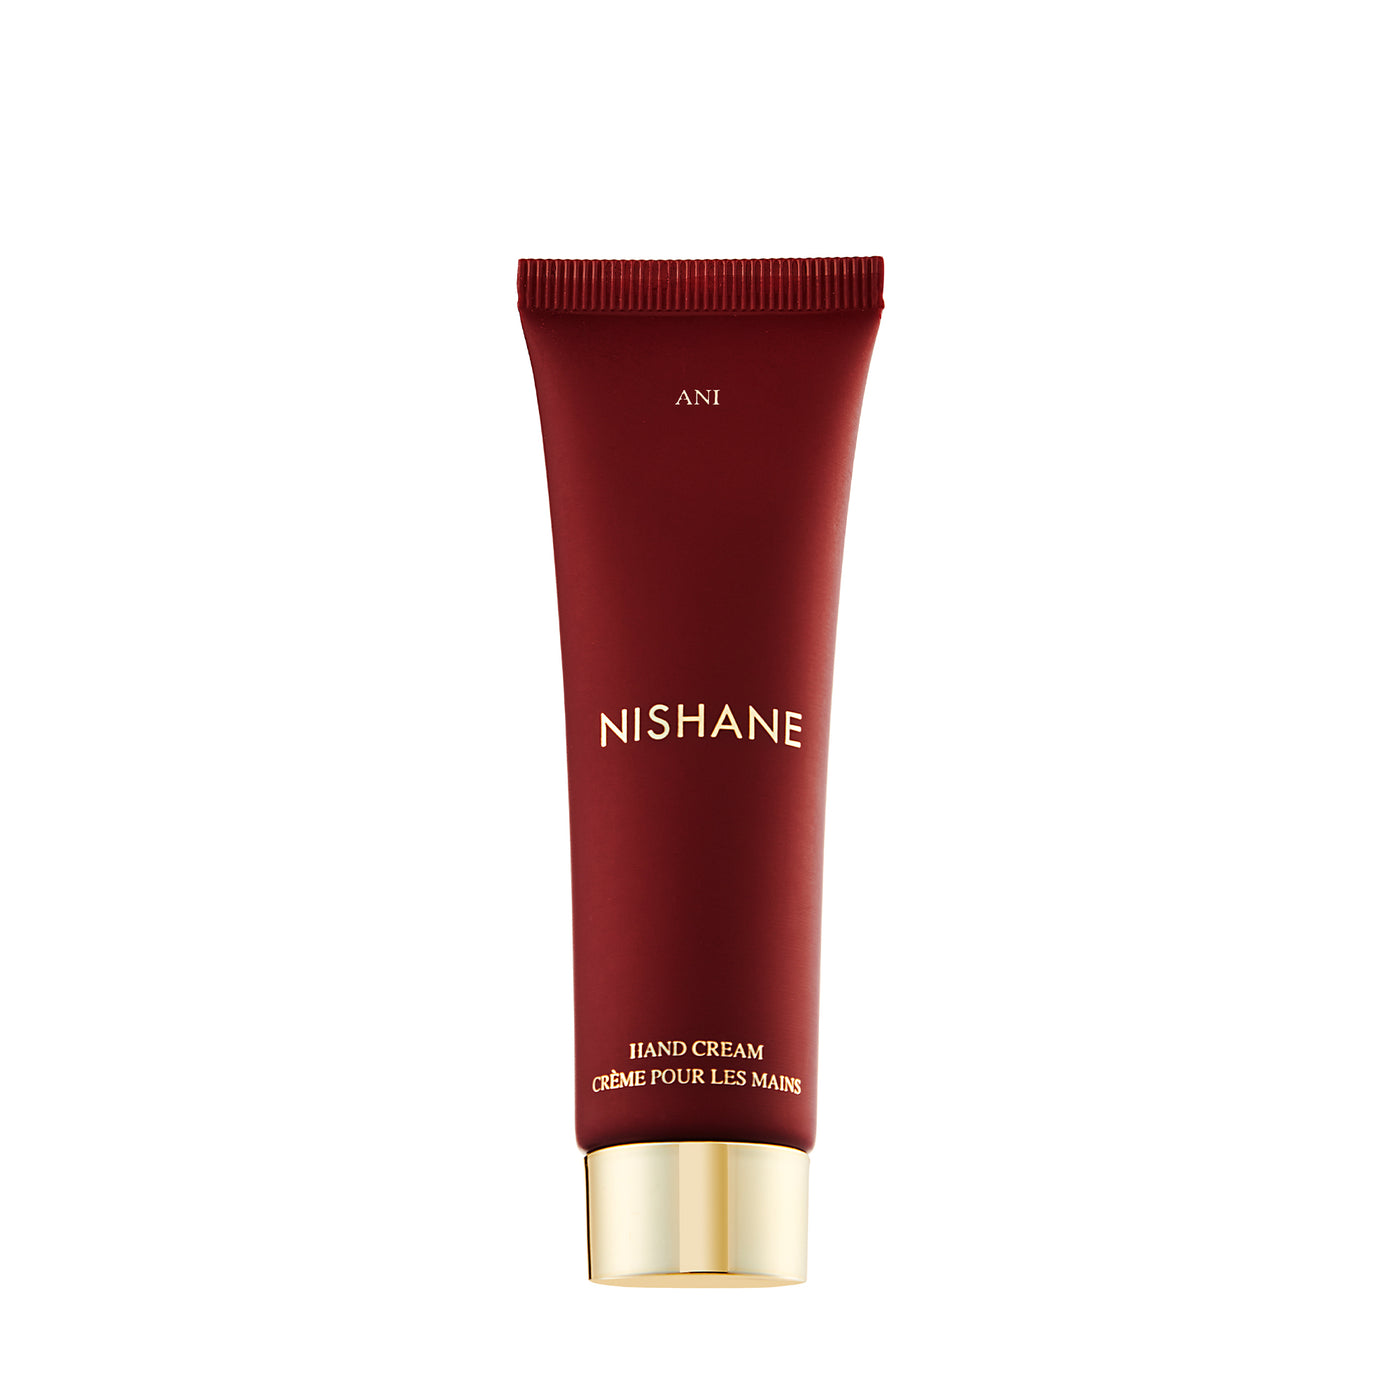 Nishane Ani Hand Cream 30ml